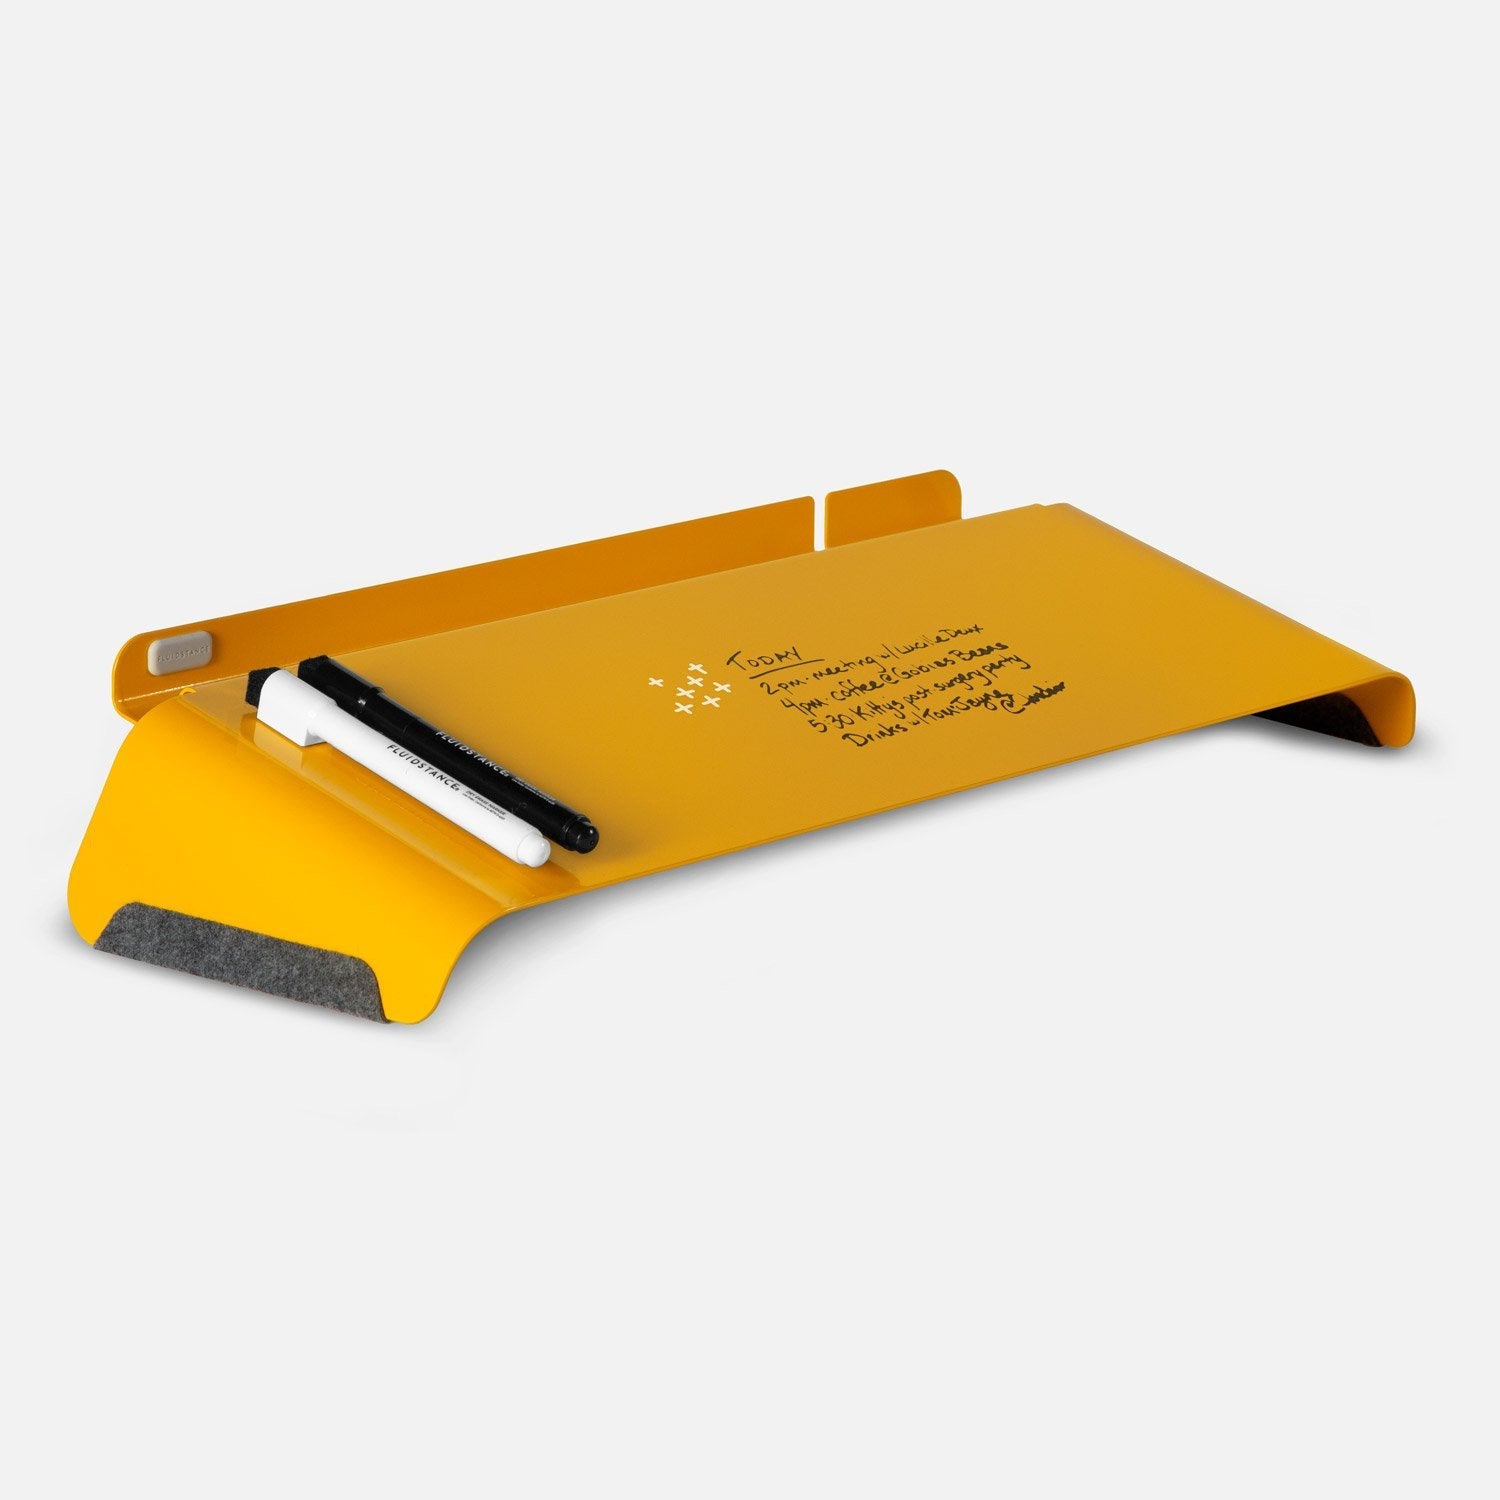 FluidStance Accessories Slope™ Desk Whiteboard